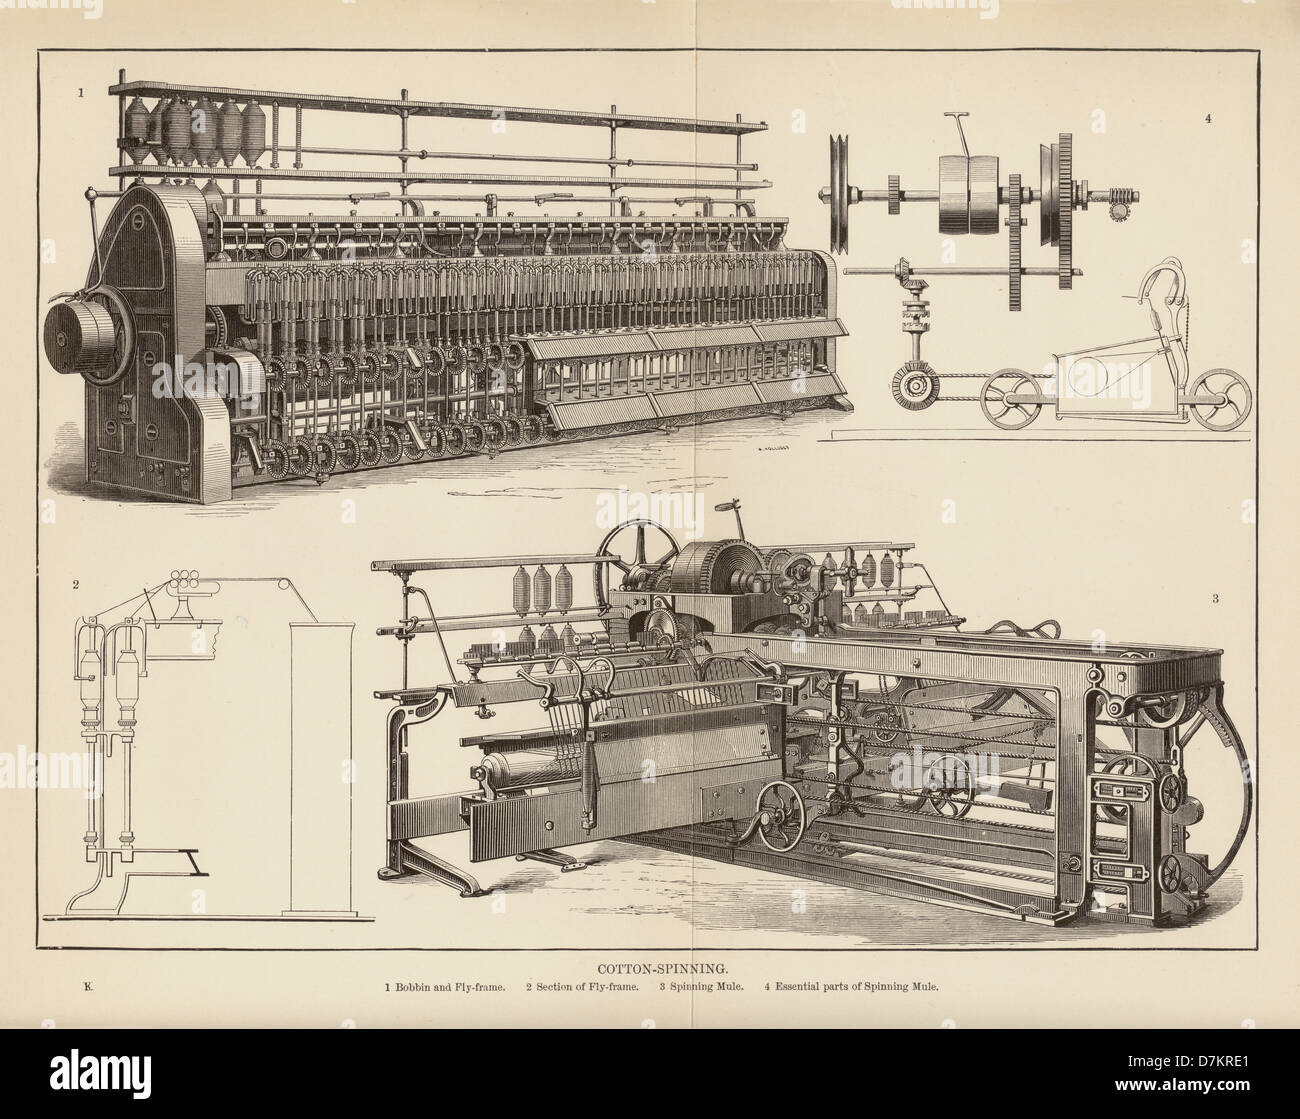 Original gravé Illustration de la filature de coton, représentant Bobbin, Fly-frame et machine à tourner Mule vers 1890, Platt Roving Frame, Royaume-Uni Banque D'Images